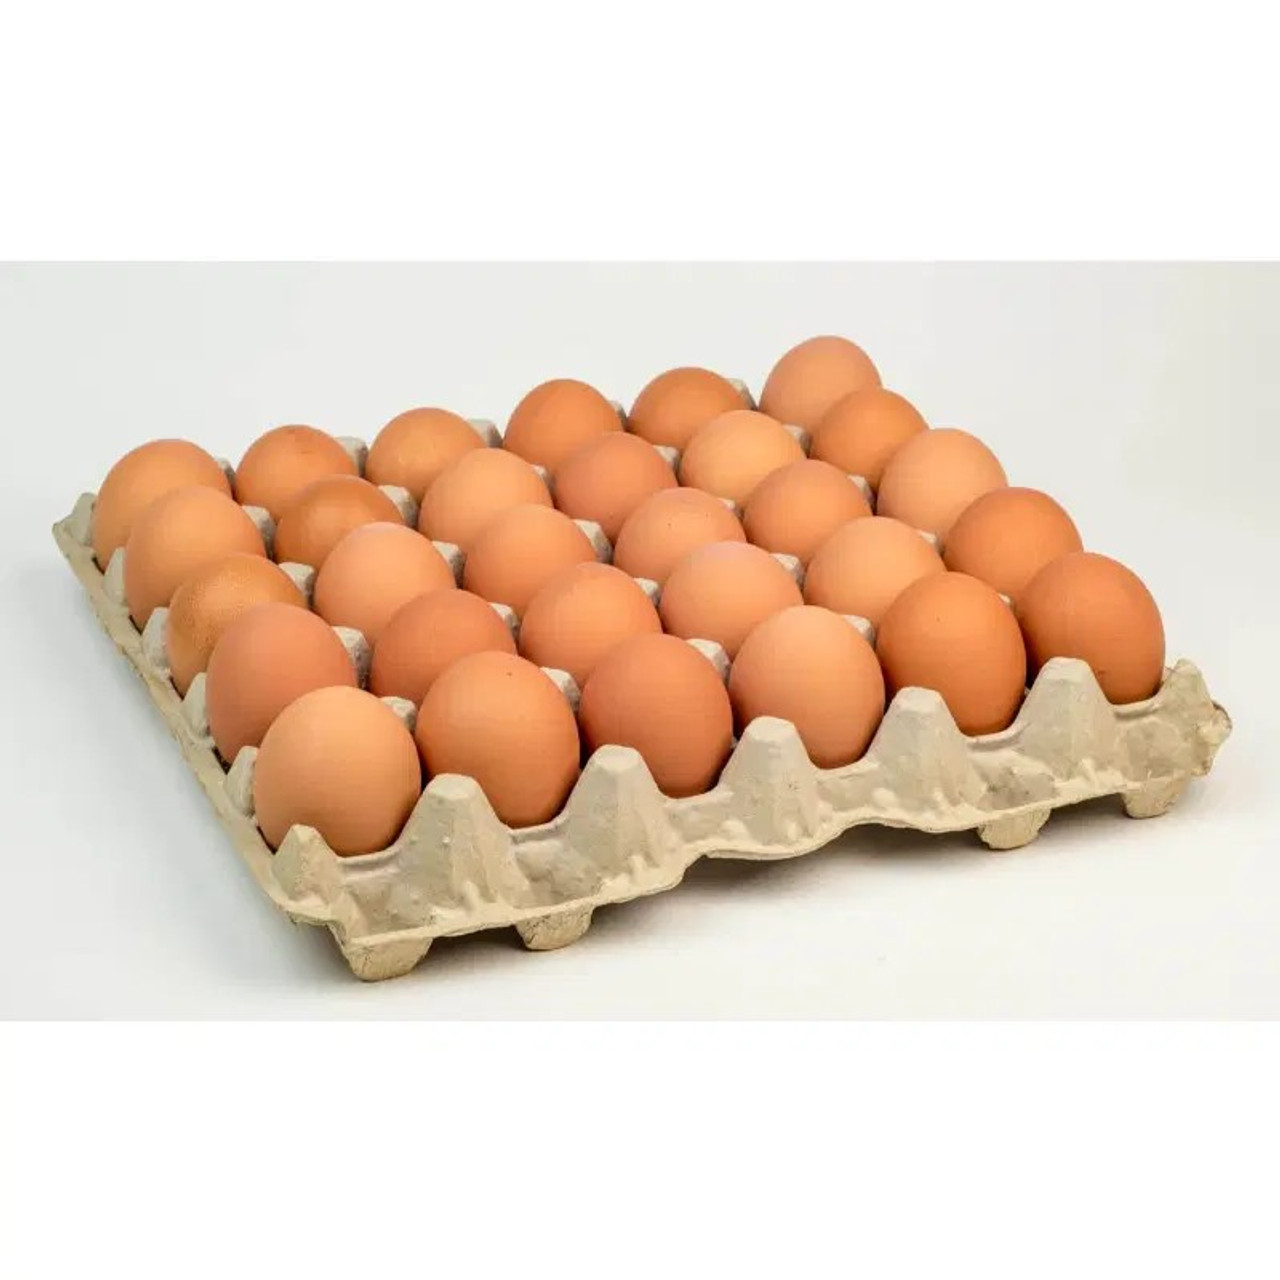 Class A Large Fresh Eggs Box 360